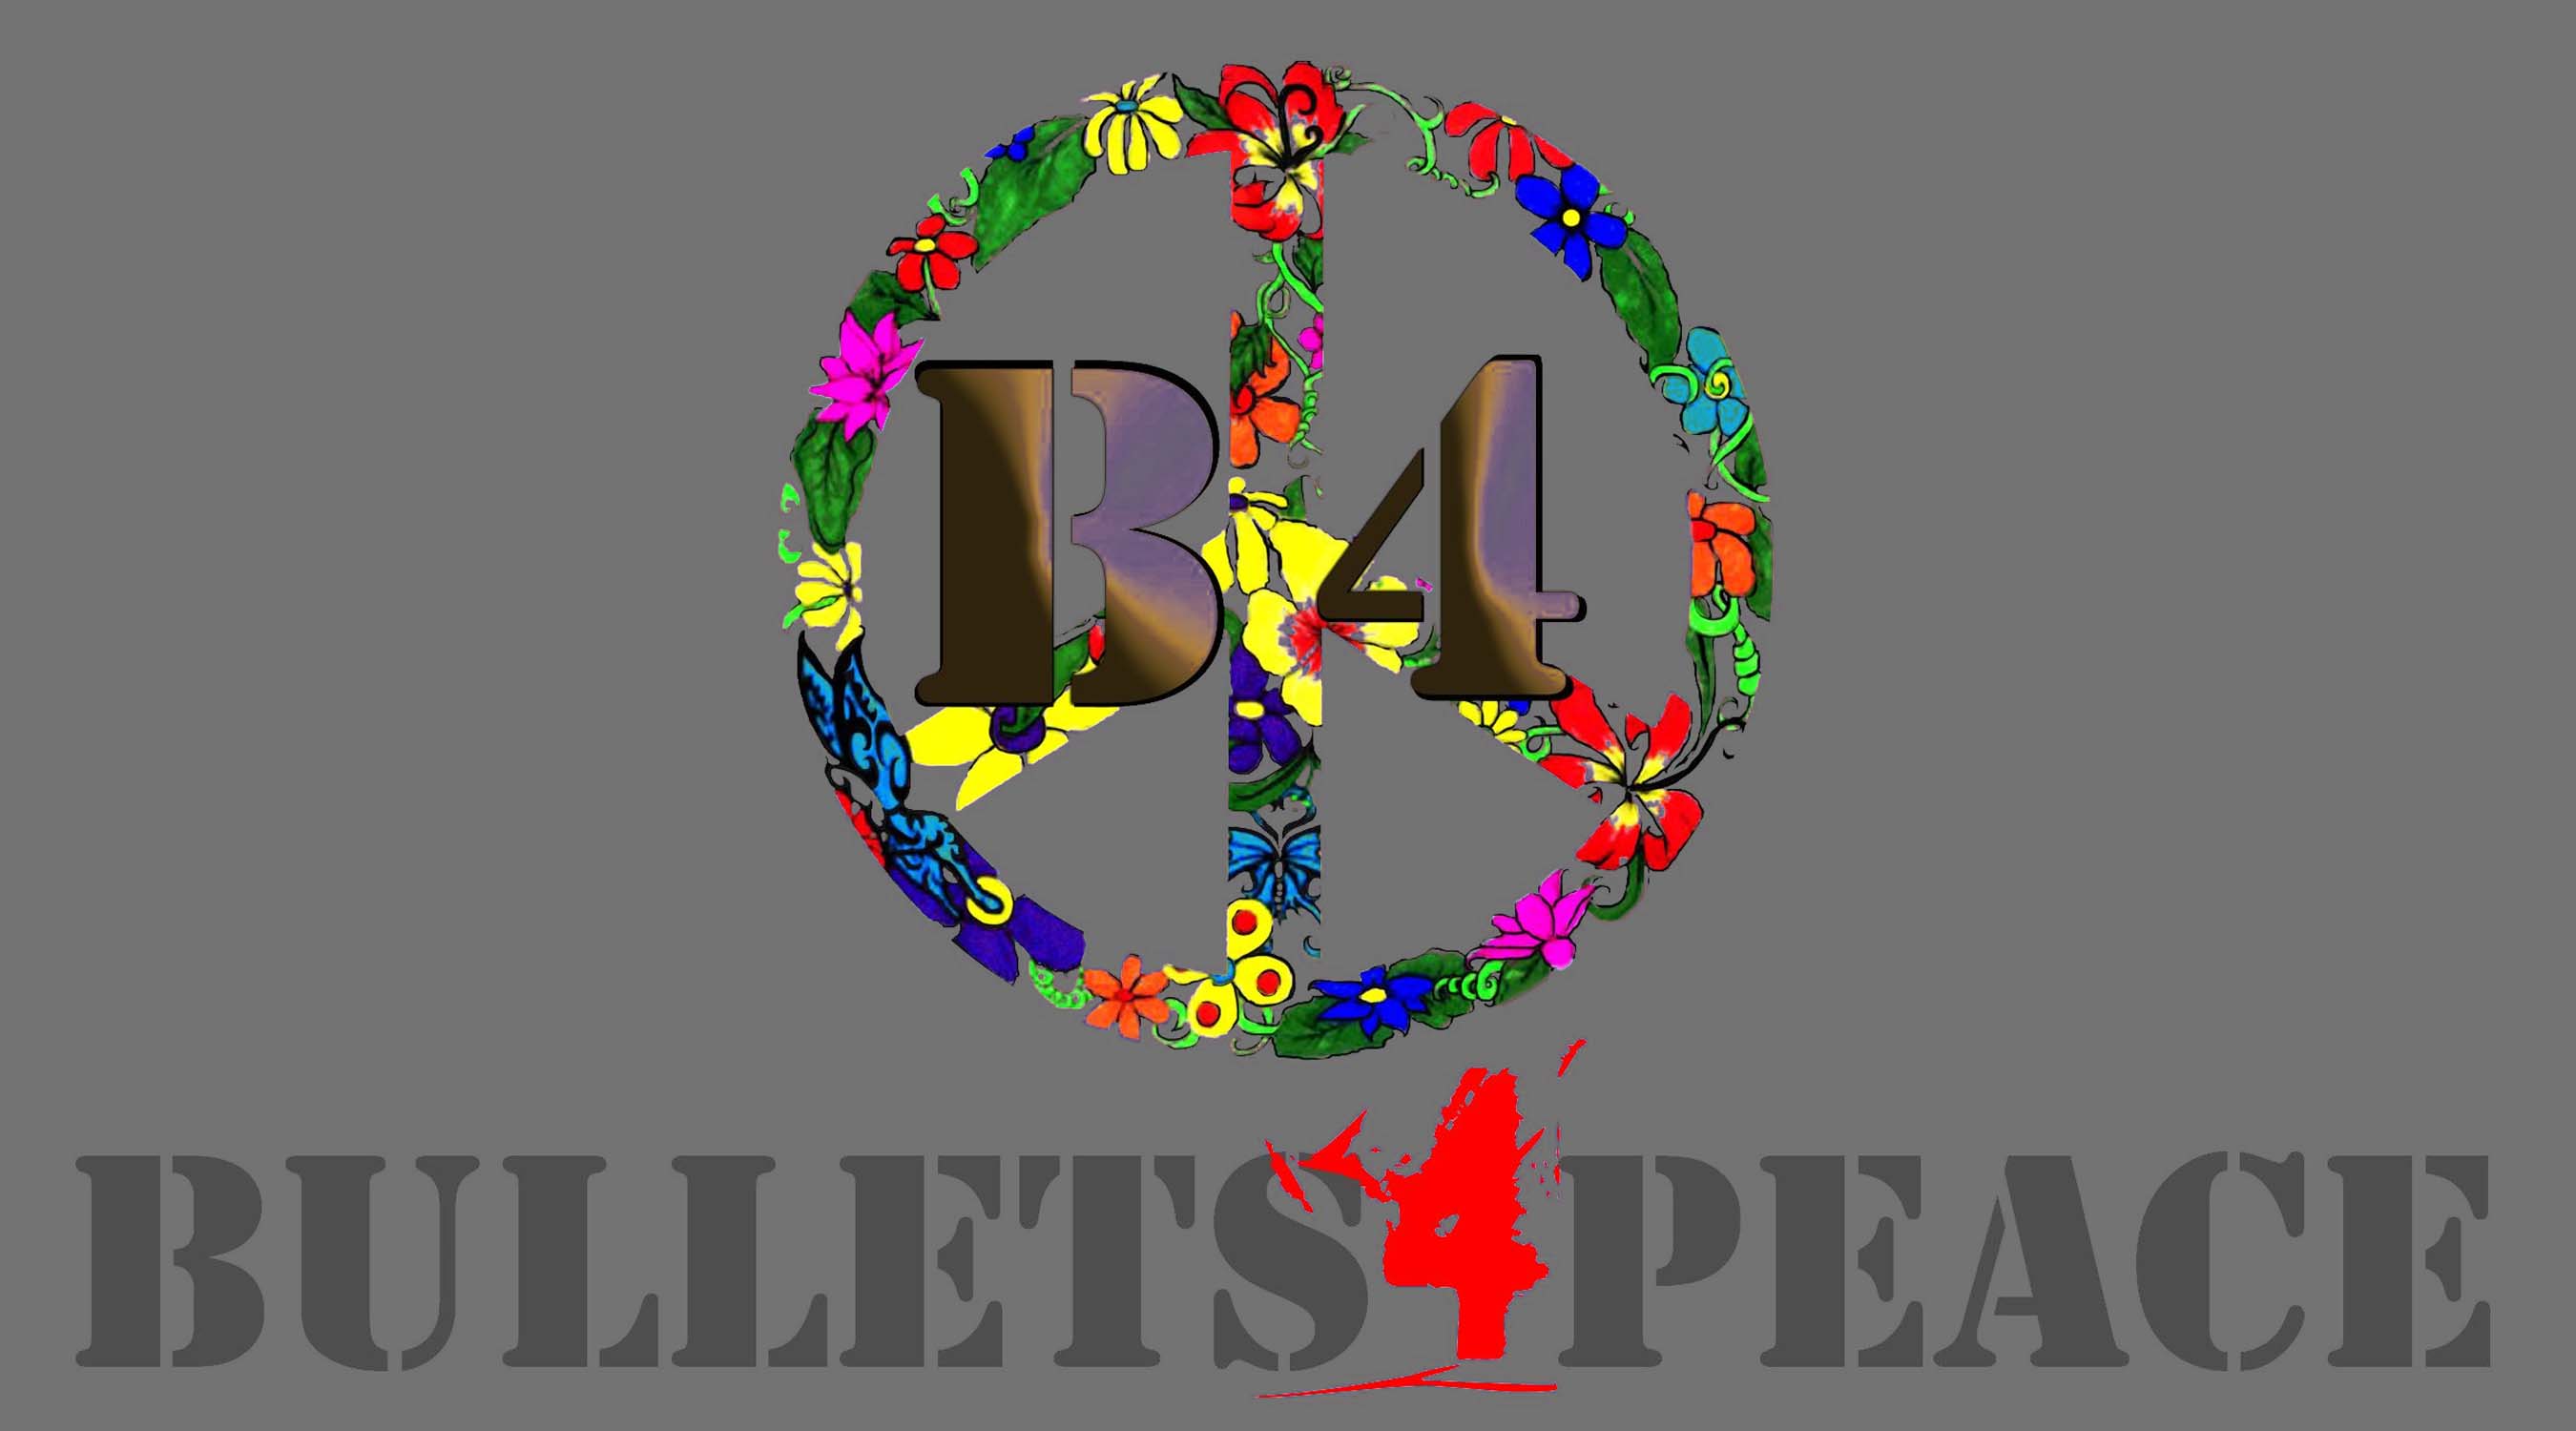 bullets 4 peace bullets image Logo